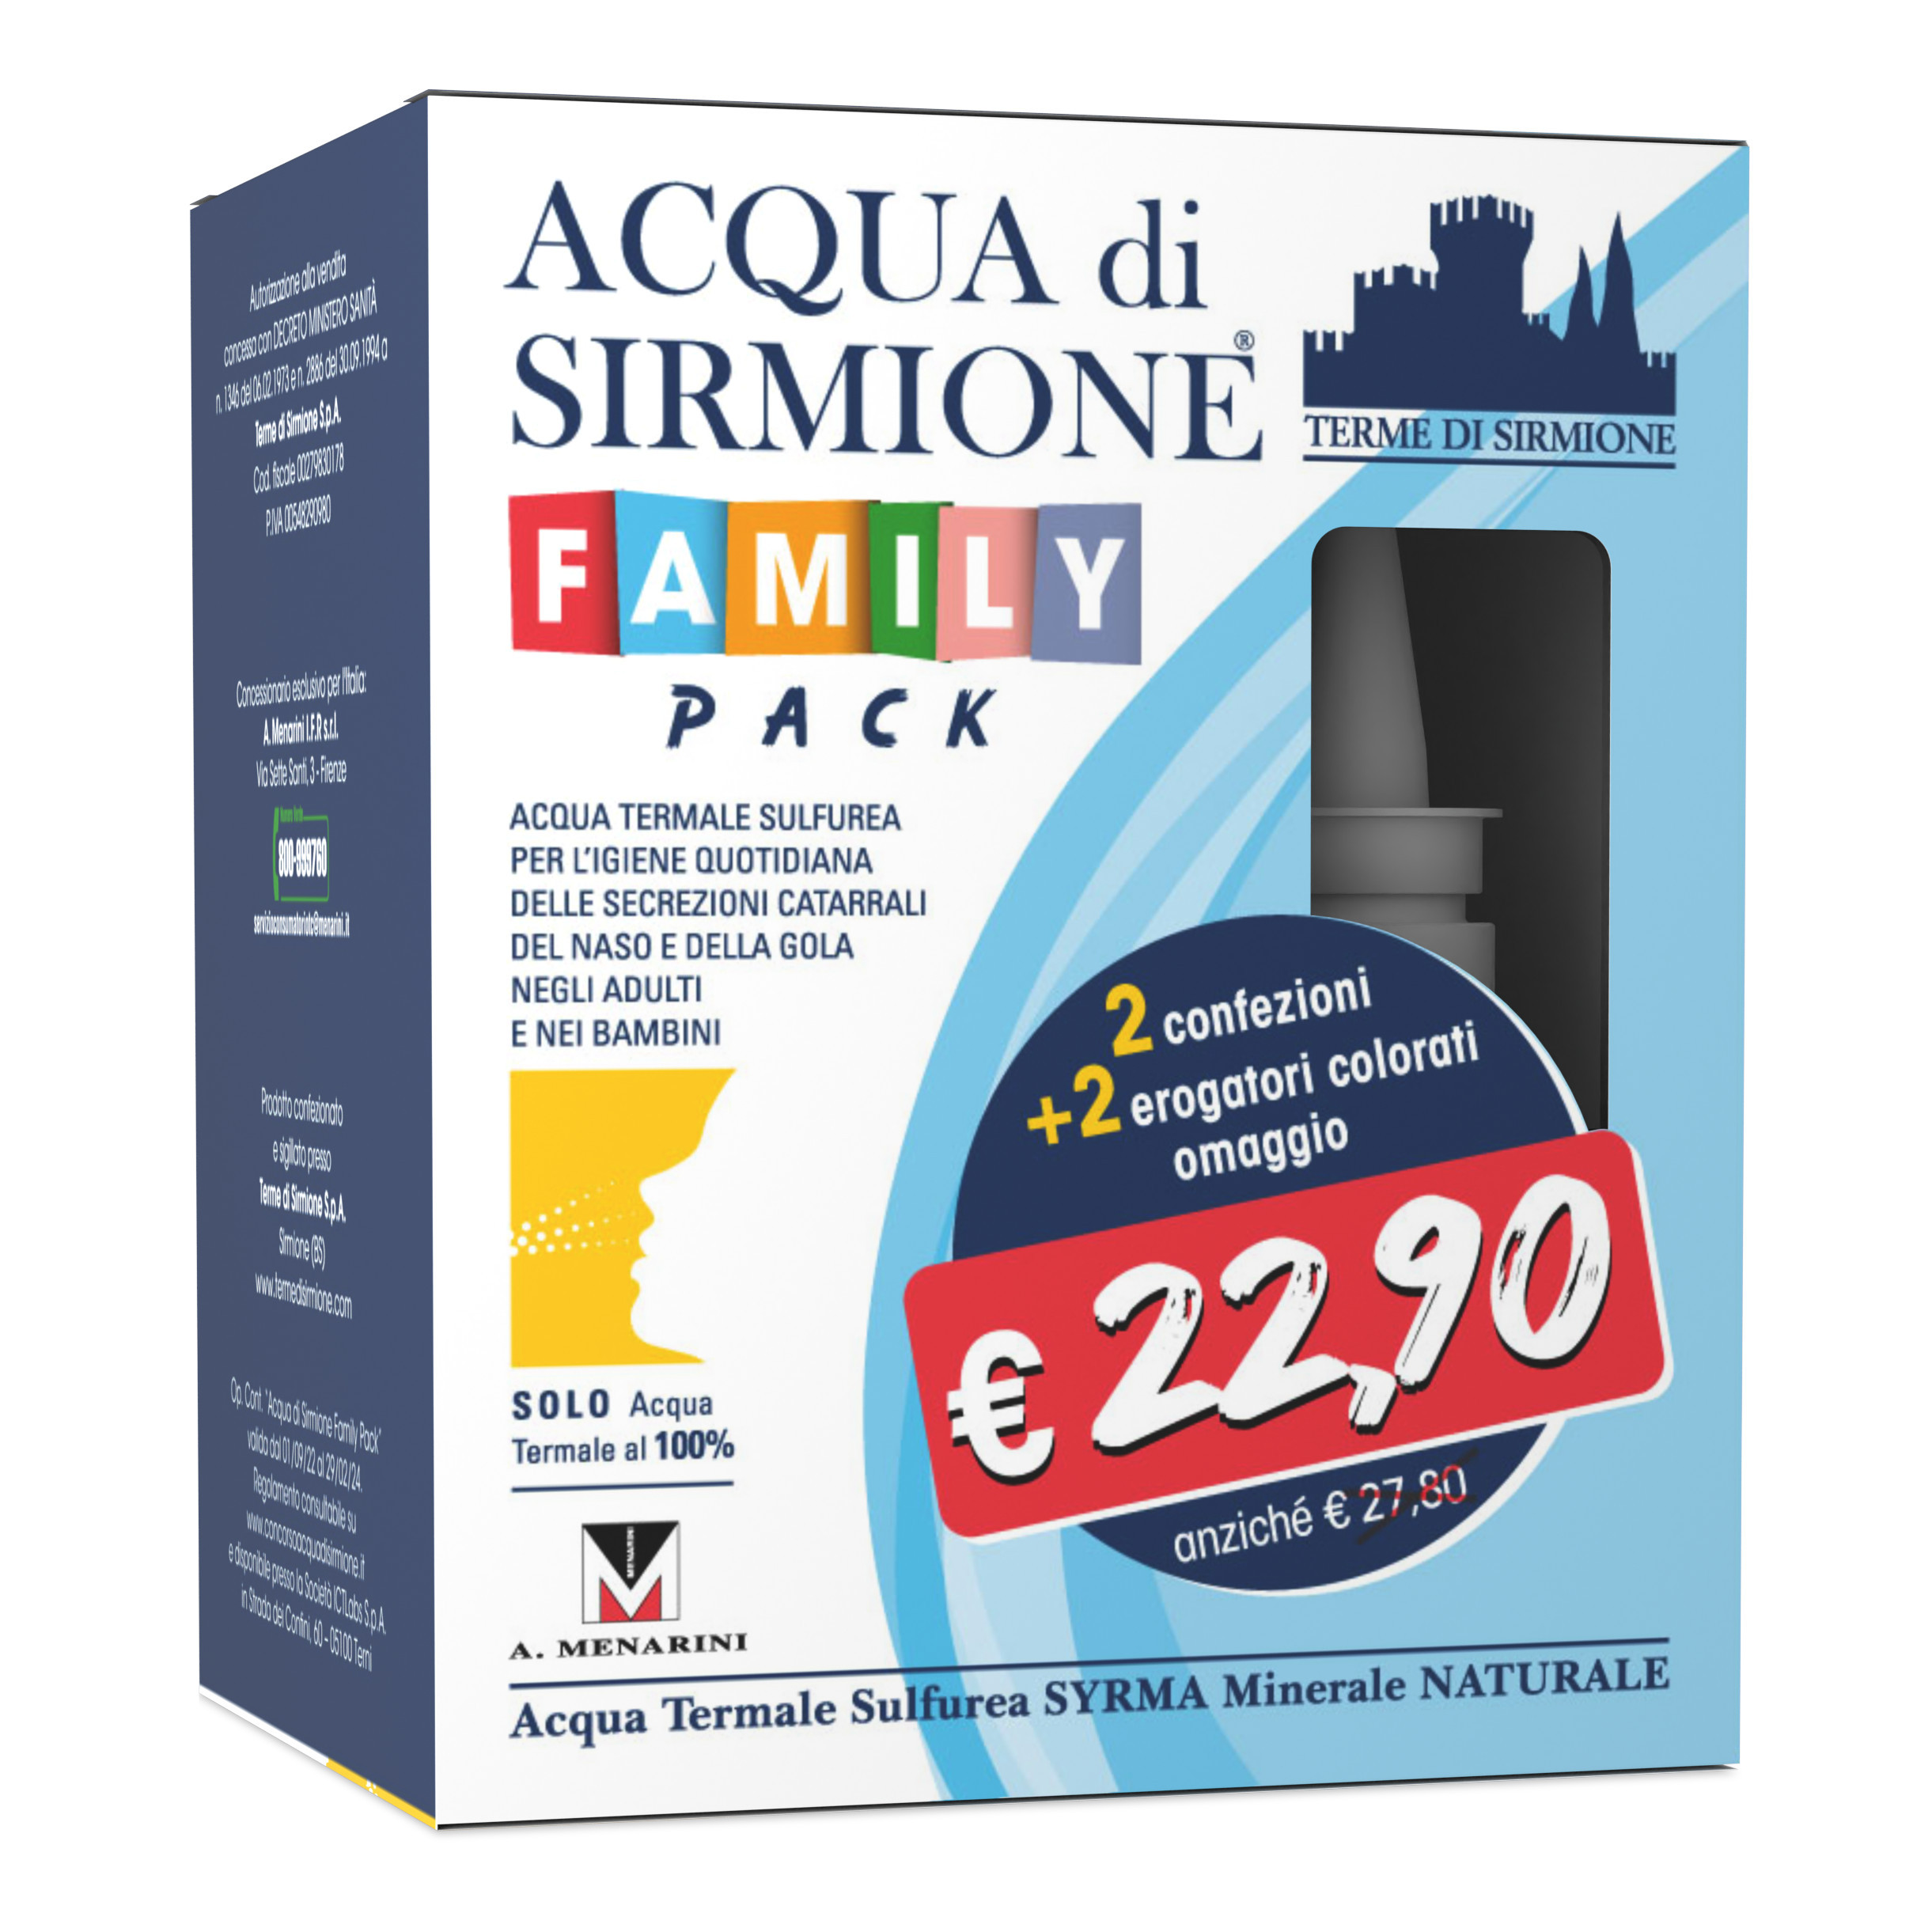 Acqua Di Sirmione - Spray Nebulizzato: in offerta a € 9.20